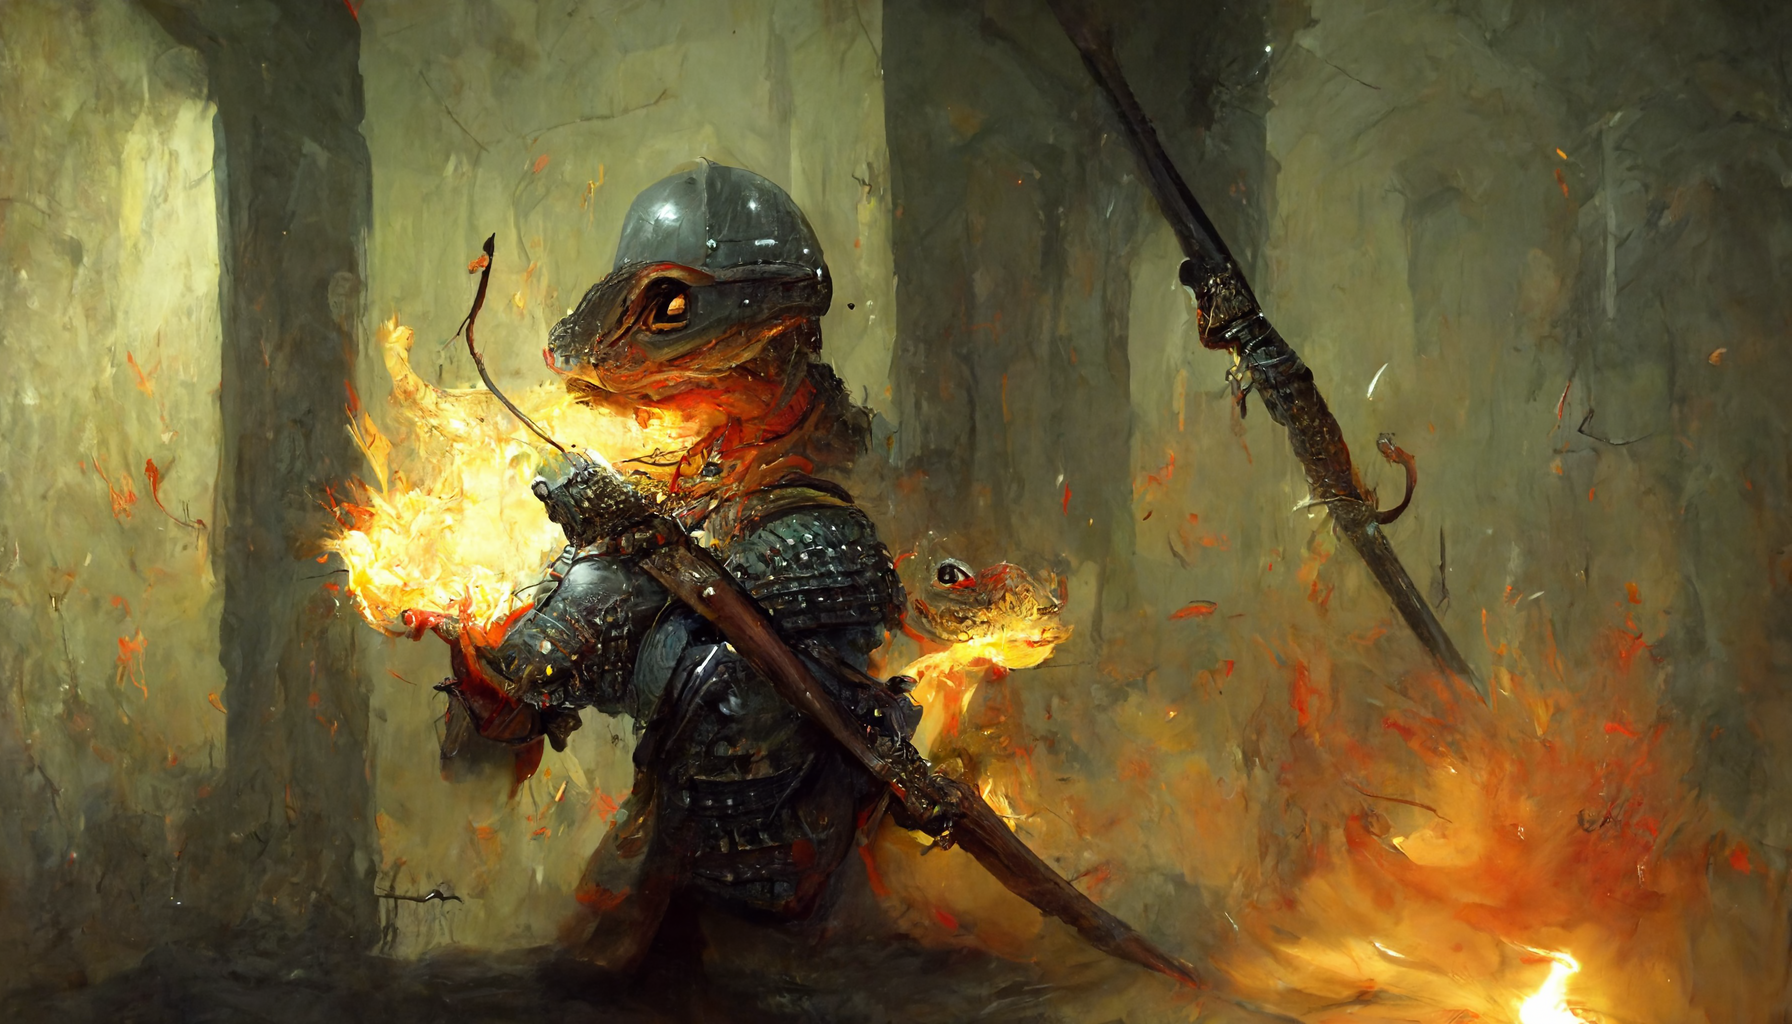 salamander warrior in a dungeon